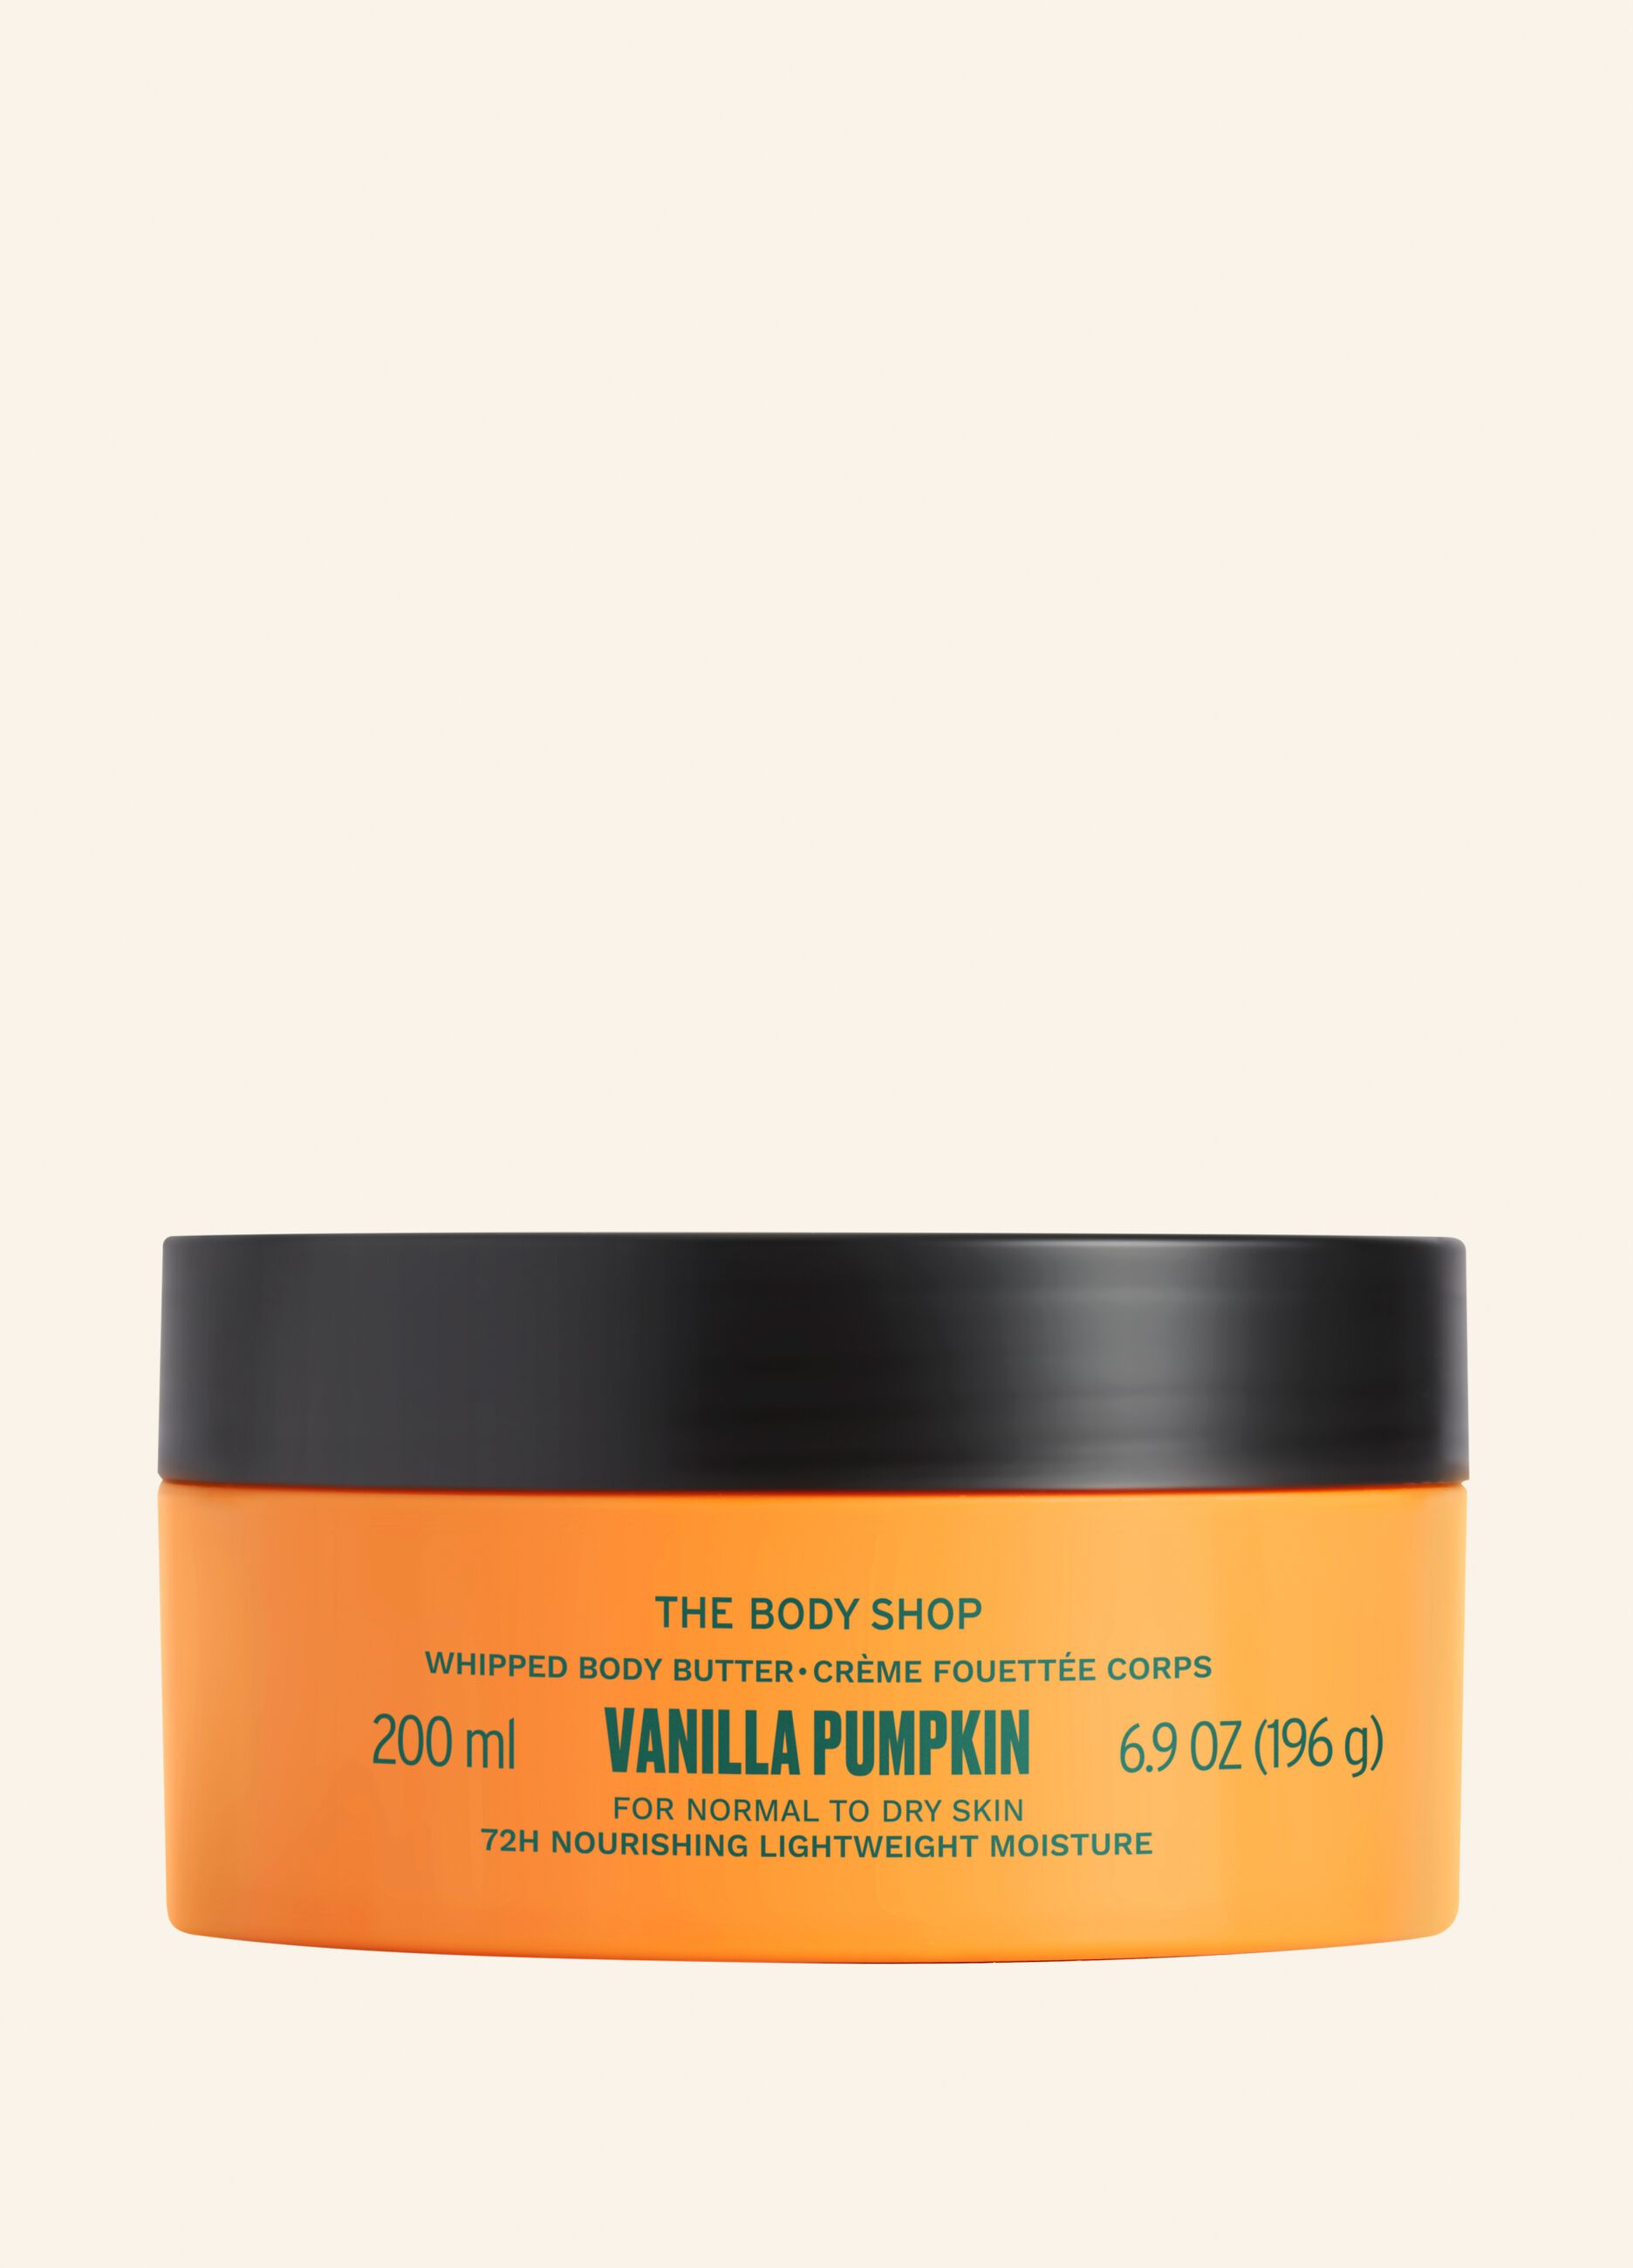 The Body Shop pumpkin & vanilla body butter 200ml